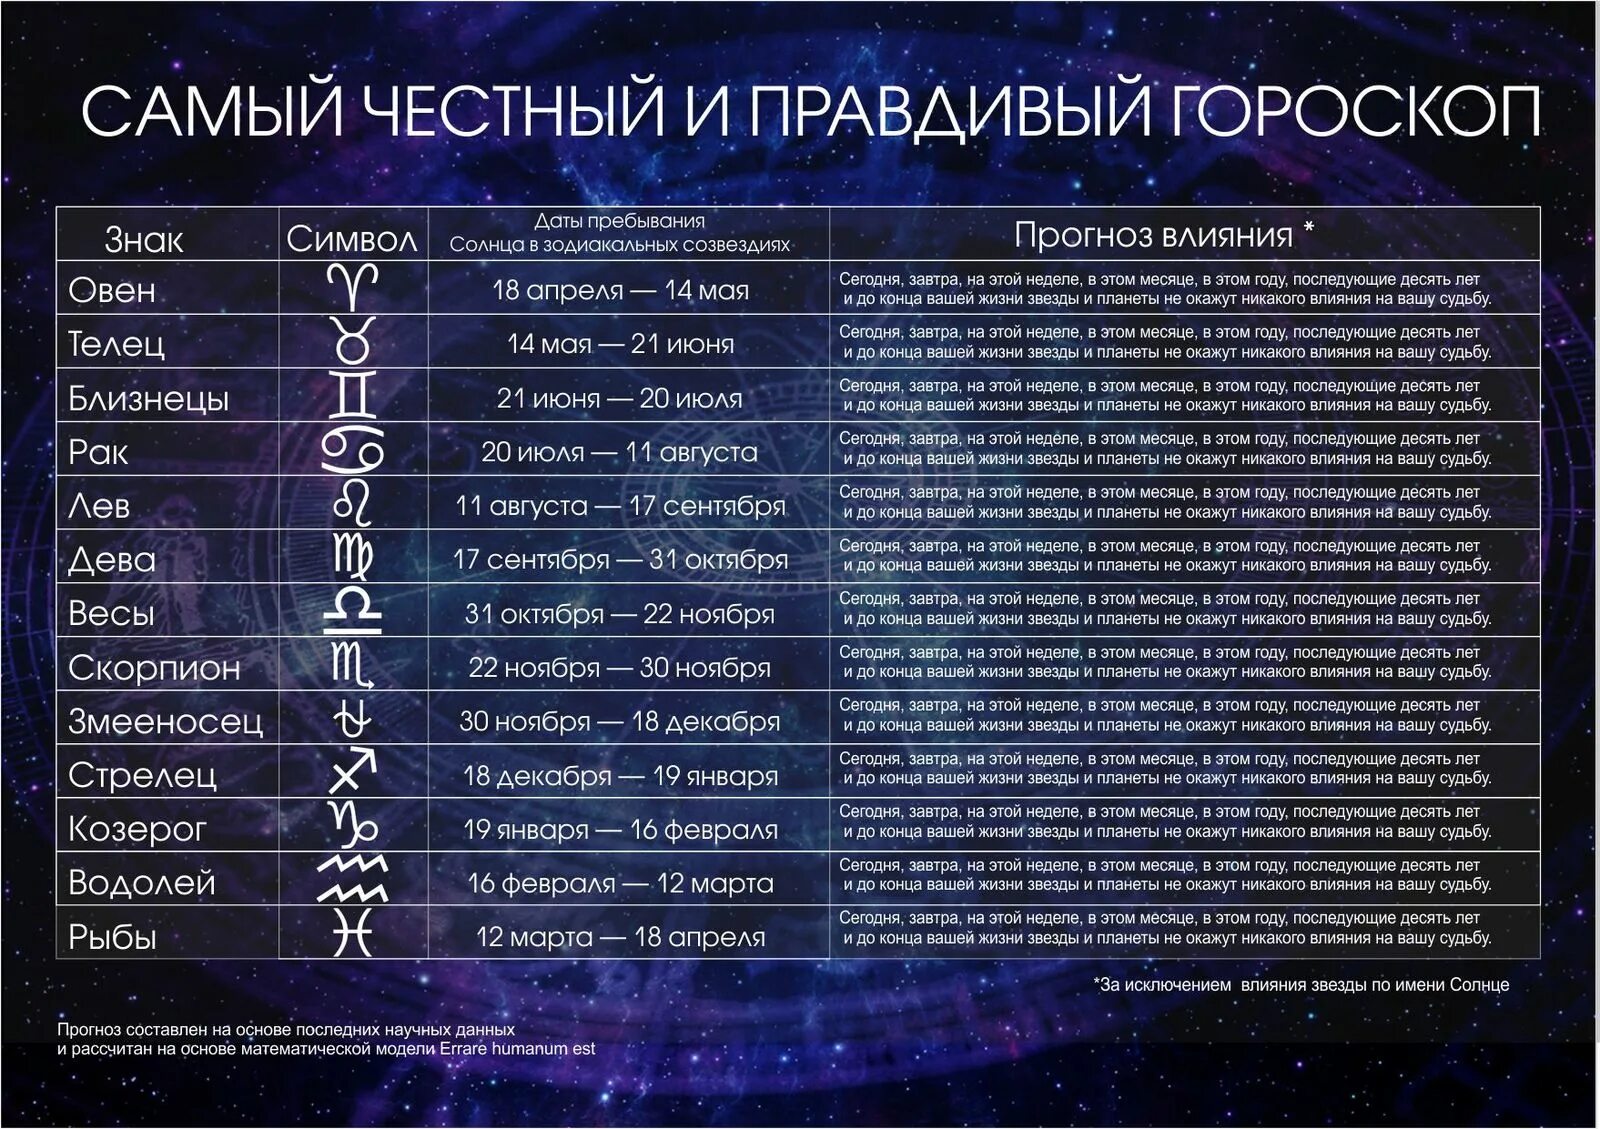 Гороскоп даты. Знаки зодиака по датам. Гороскоп по дате рождения. Гороскоп по датам и месяцам.